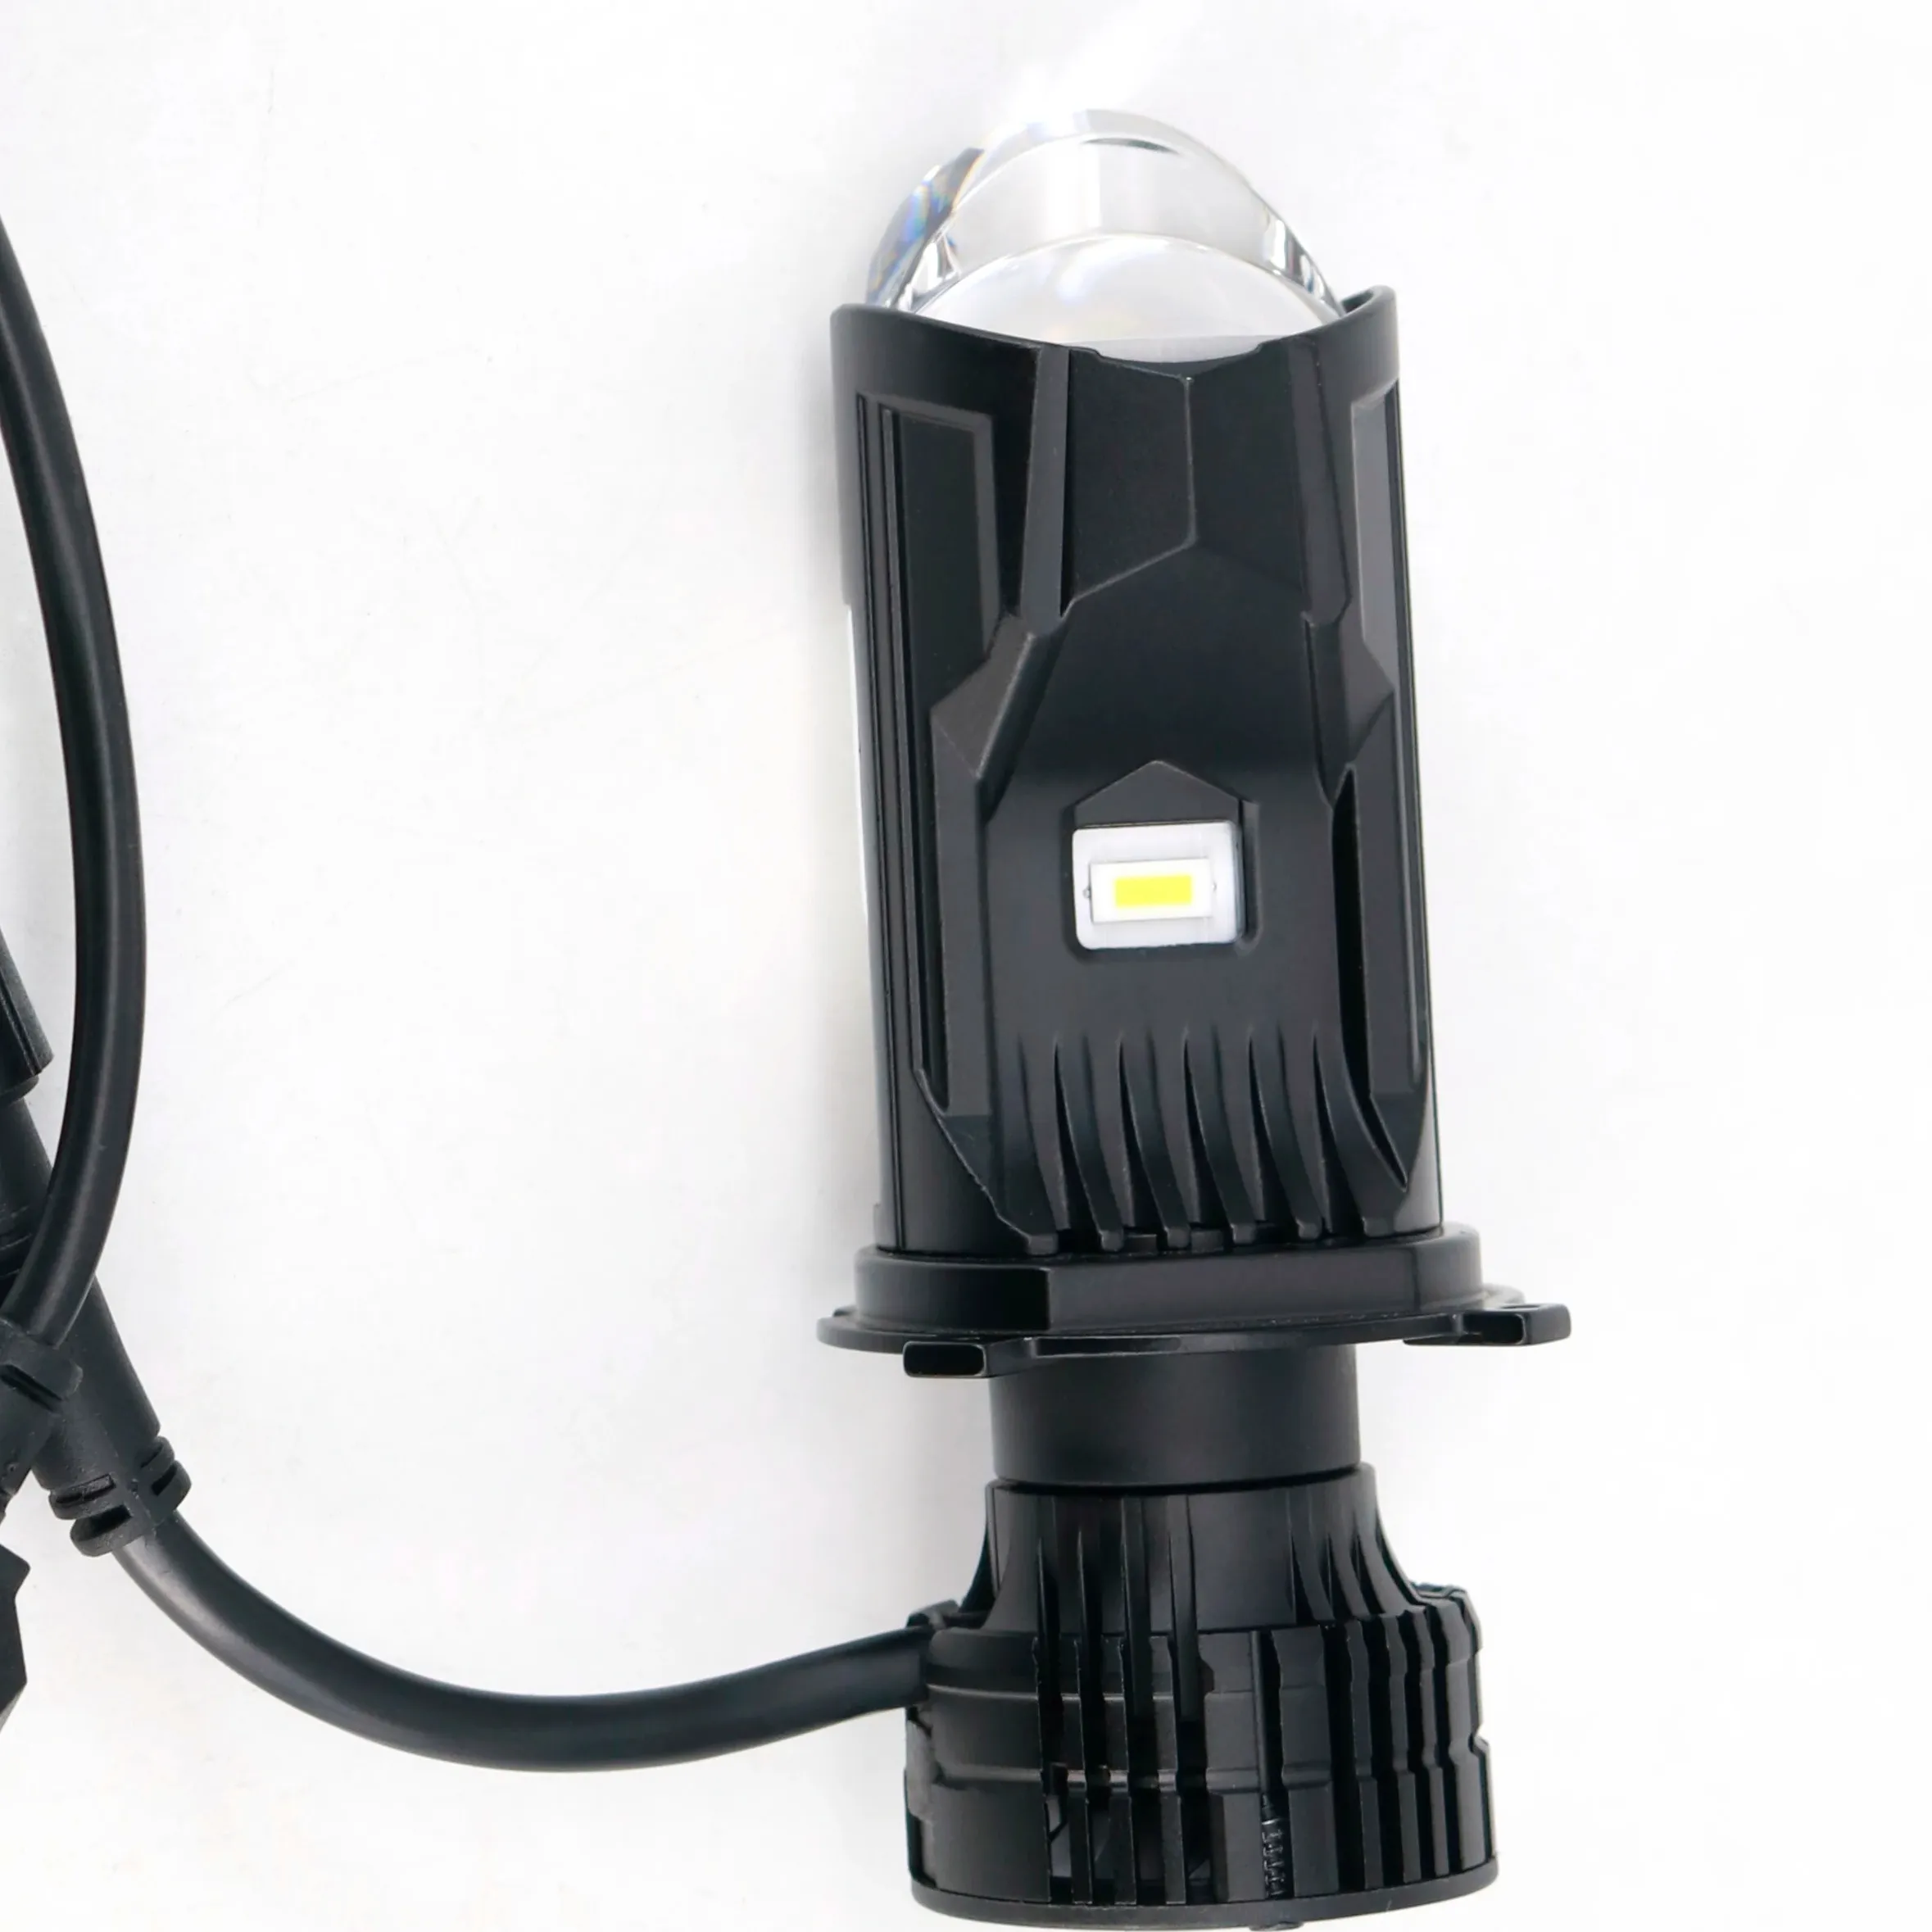 Siêu sáng mini CANBUS H4 led xe đèn pha Bóng đèn ống kính máy chiếu Kit 6500K Ống kính tự động đèn H4 cao thấp chùm cho xe ô tô xe máy